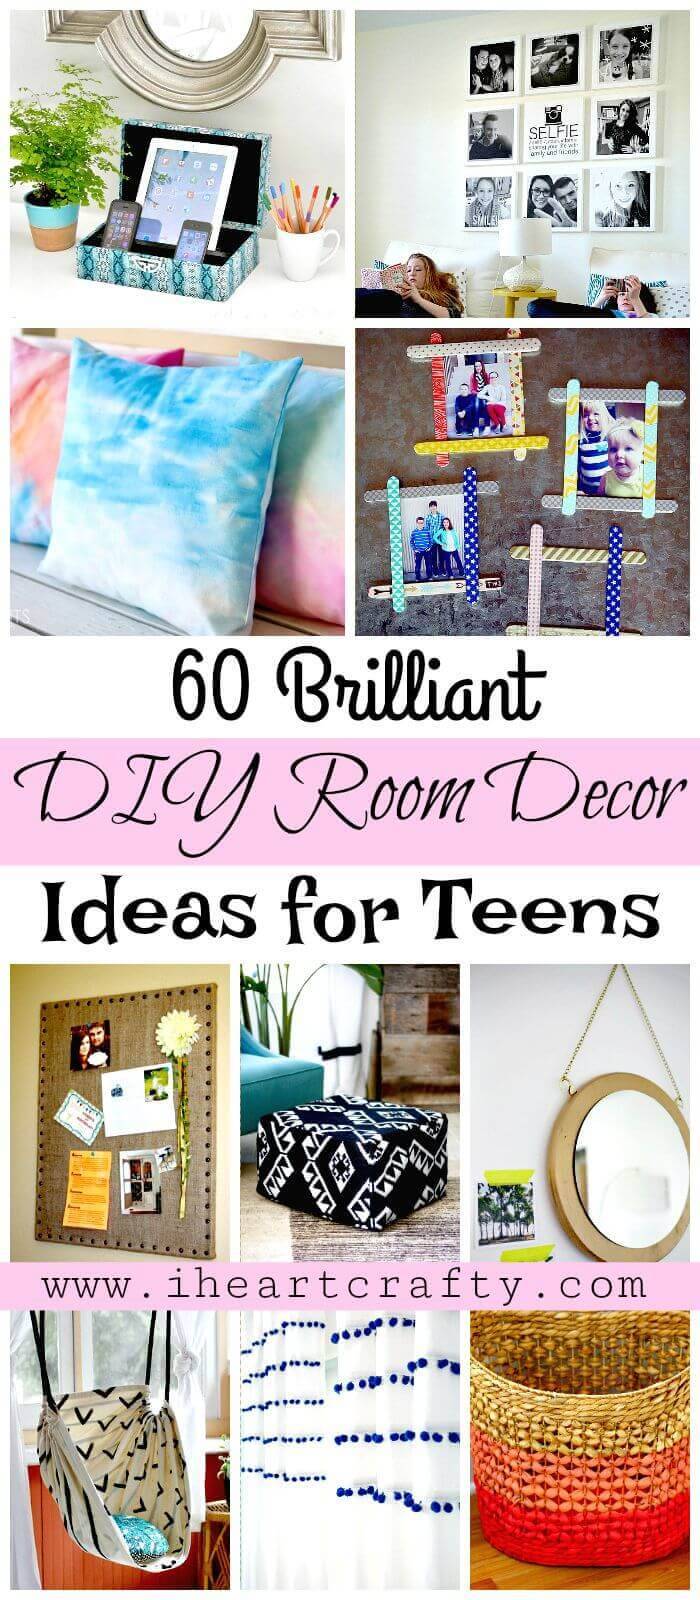 DIY Room Decor Ideas for Teens